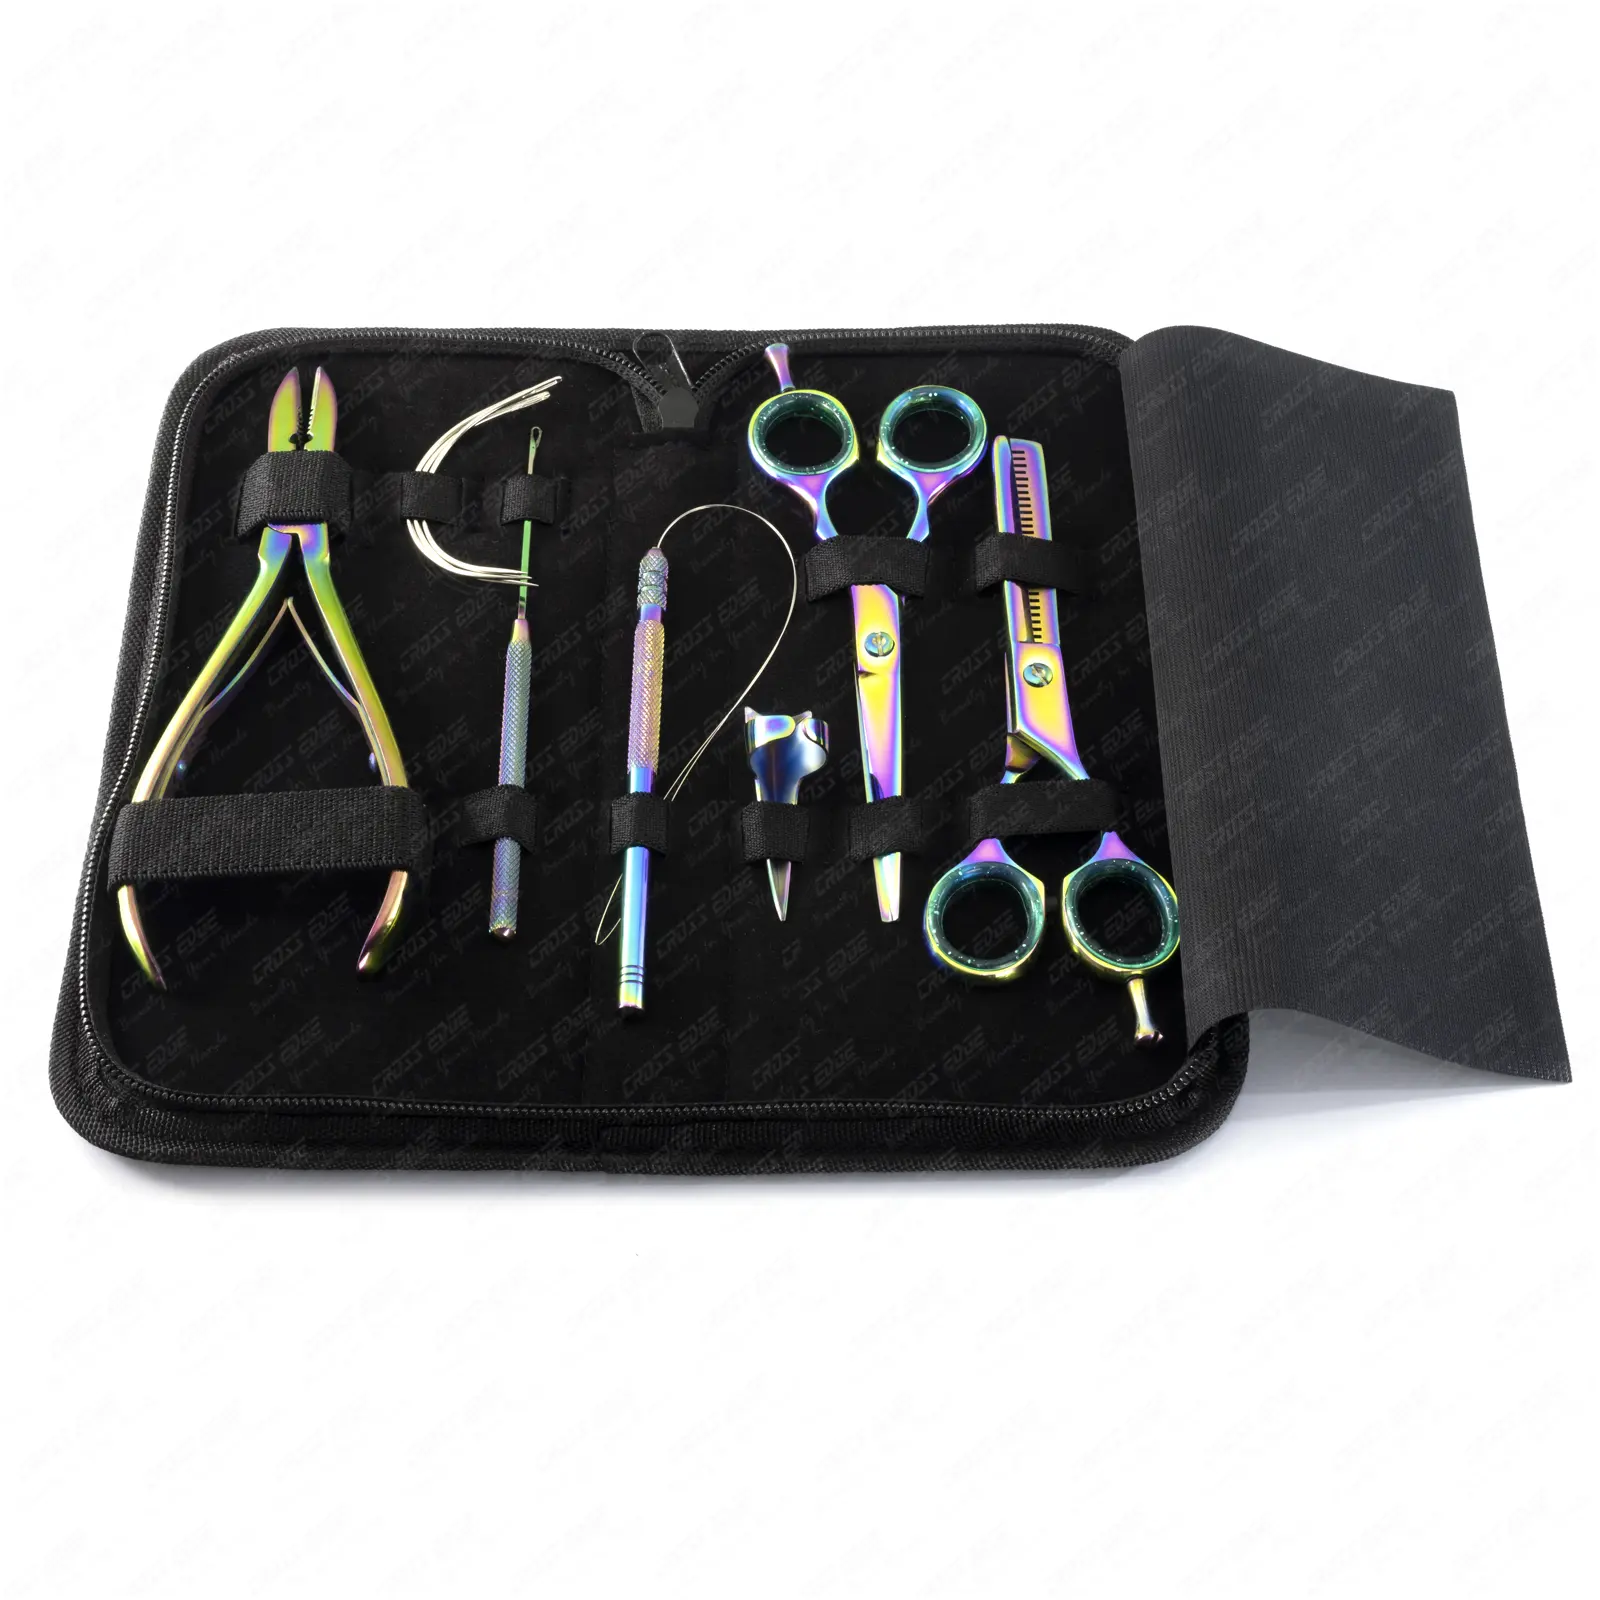 Haarverlängerungs-Werkzeug-Kit Haarauslöserschere Edelstahl speziell für menschliche Haarverlängerungs-Werkzeug-Kit